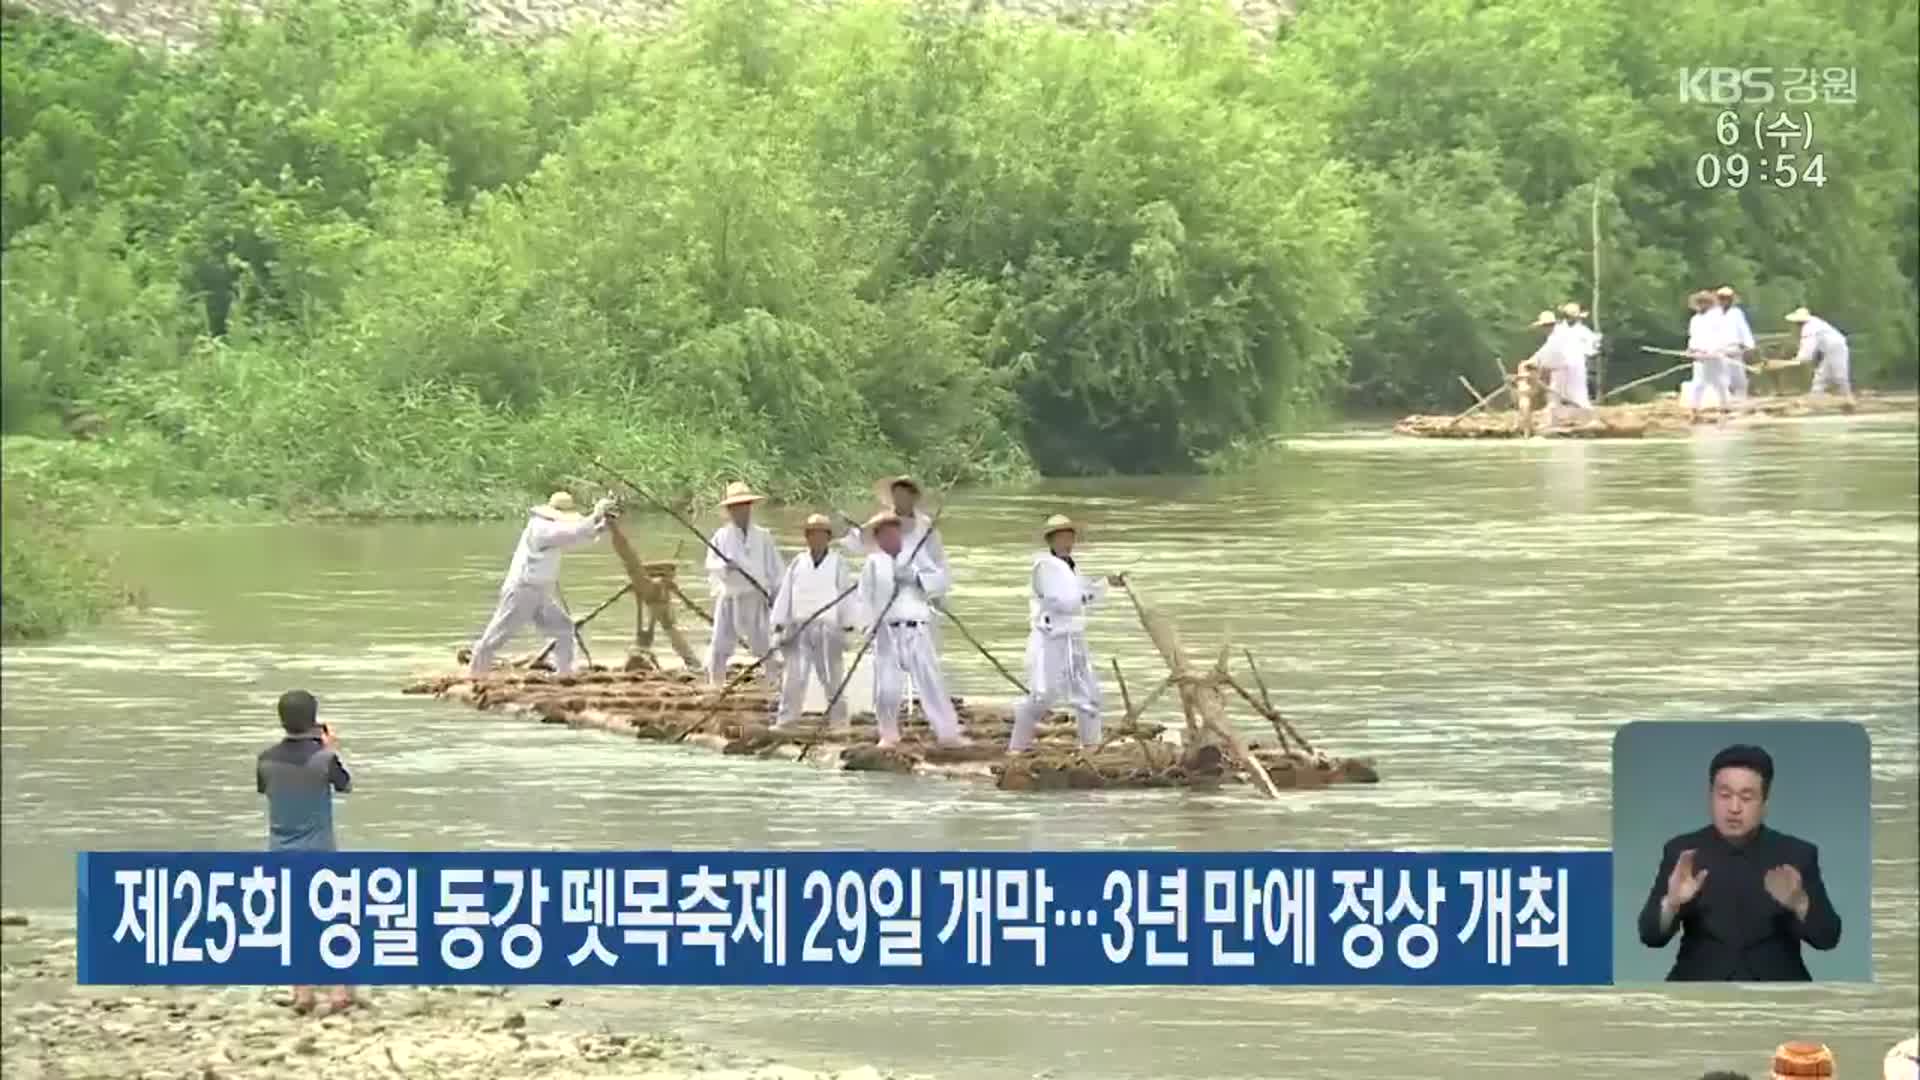 제25회 영월 동강 뗏목축제 29일 개막…3년 만에 정상 개최